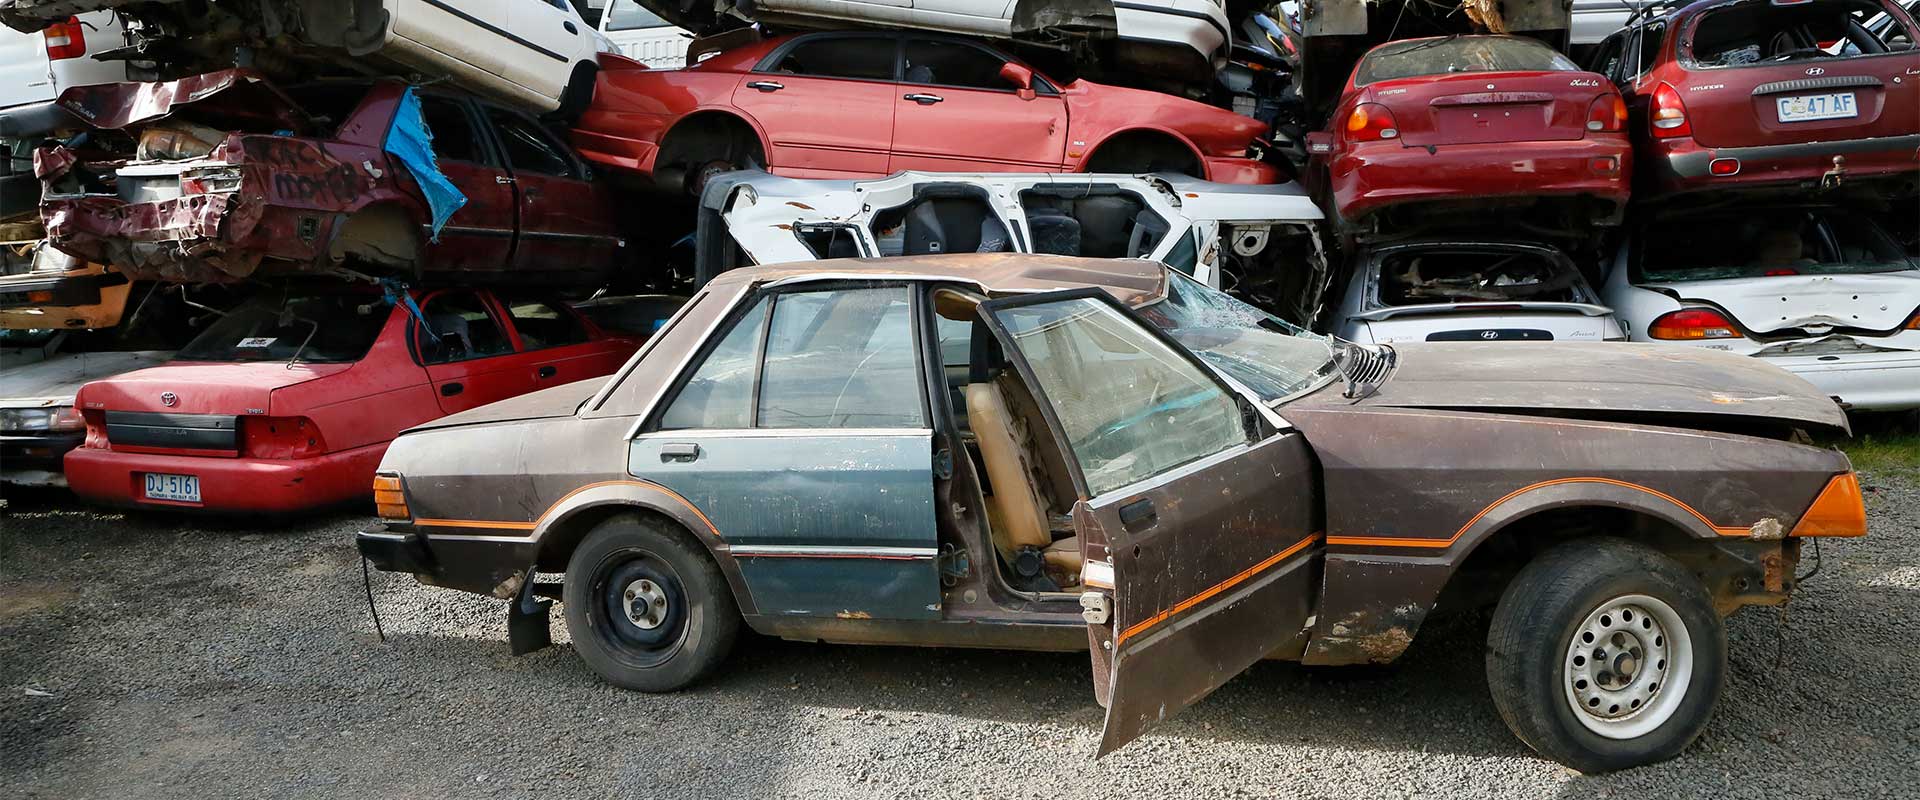 Top 10 Car Wreckers in Tasmania